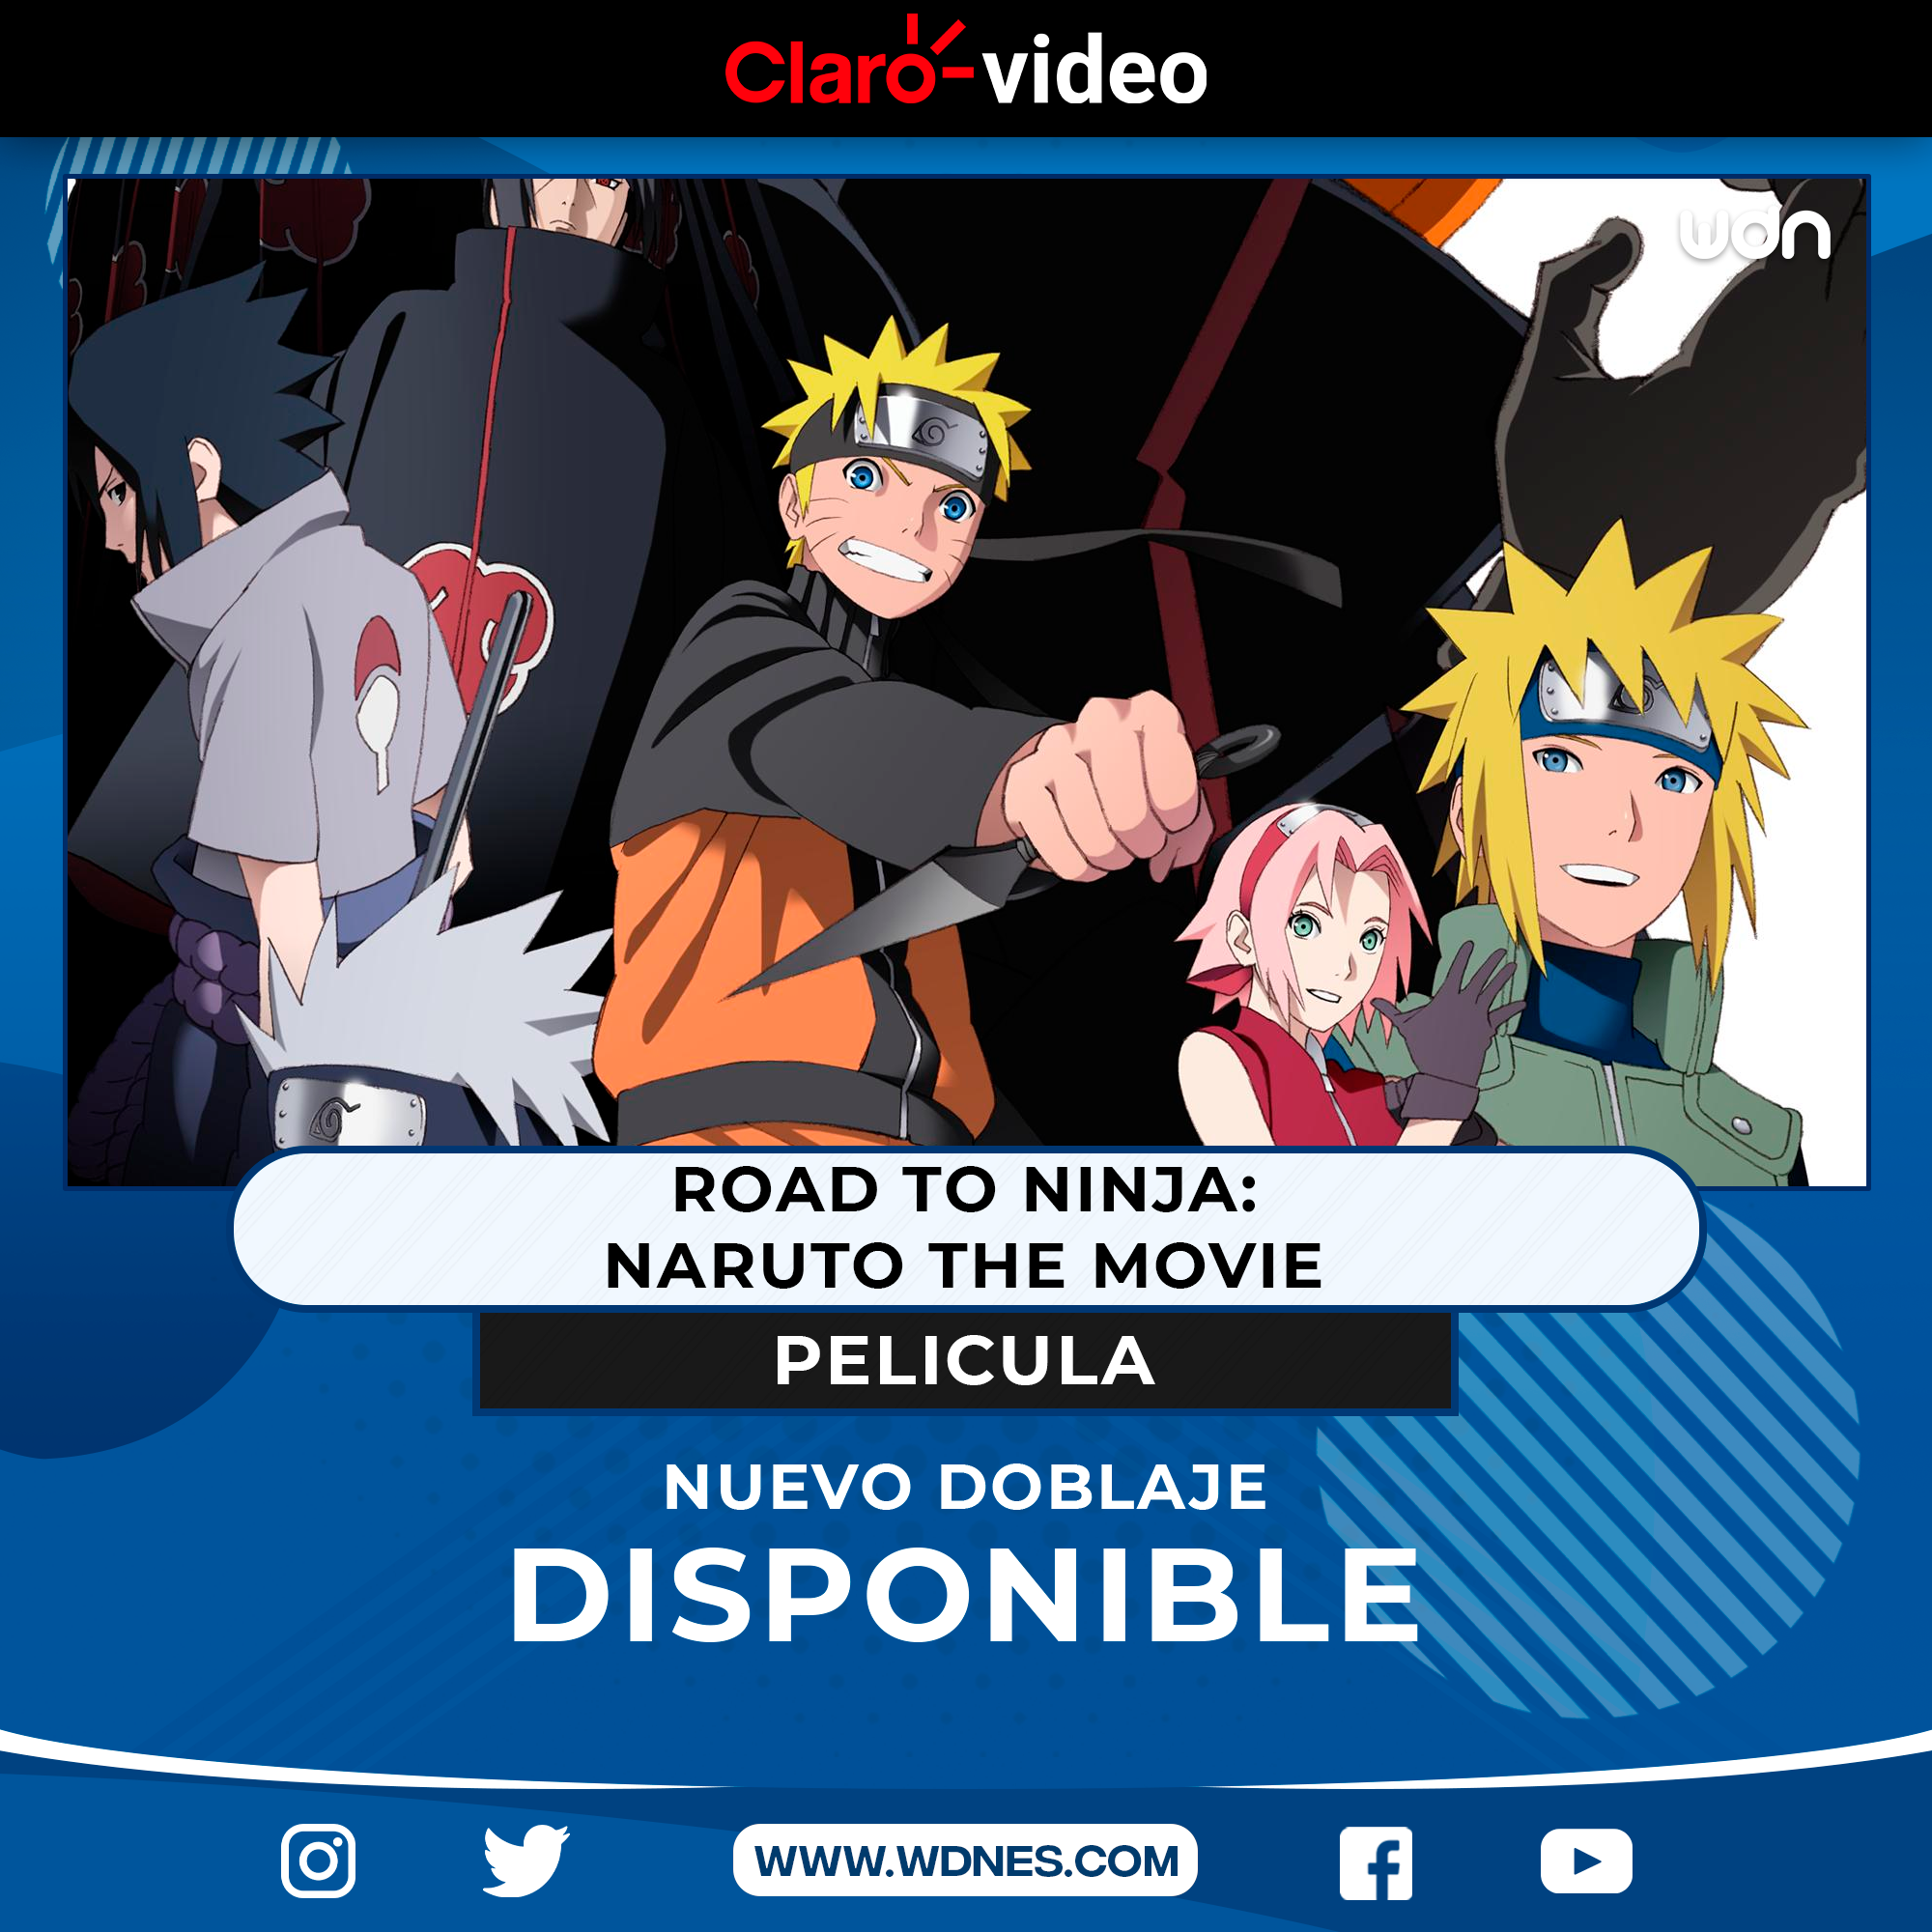 Nuevas películas de Naruto llegan a Claro Video